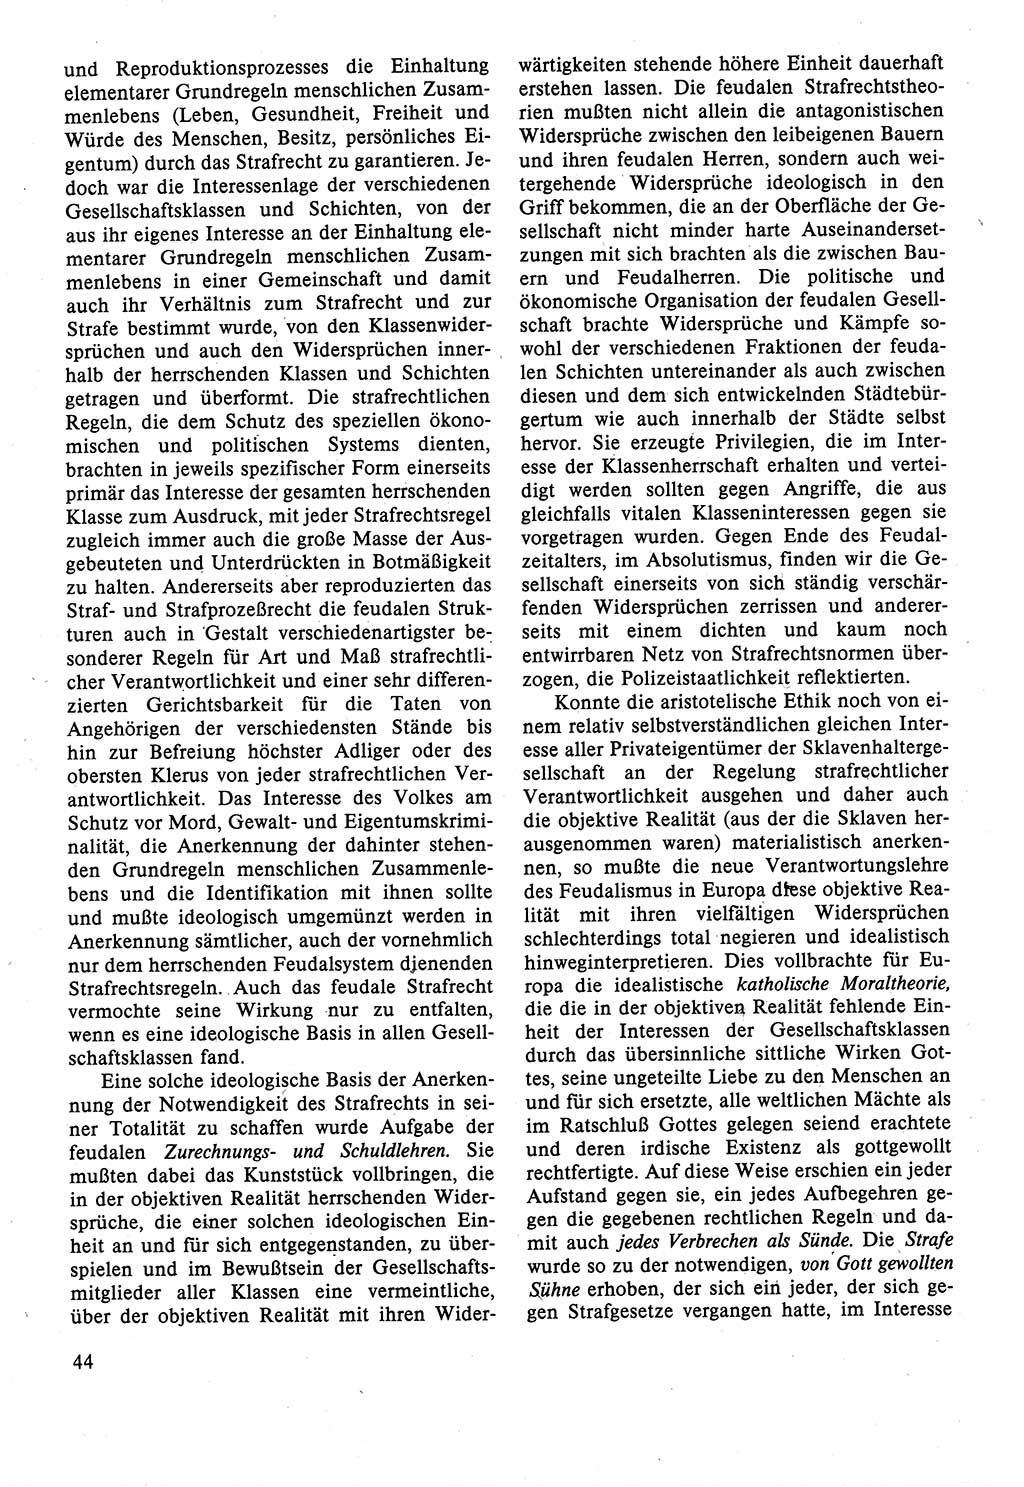 Strafrecht der DDR (Deutsche Demokratische Republik), Lehrbuch 1988, Seite 44 (Strafr. DDR Lb. 1988, S. 44)